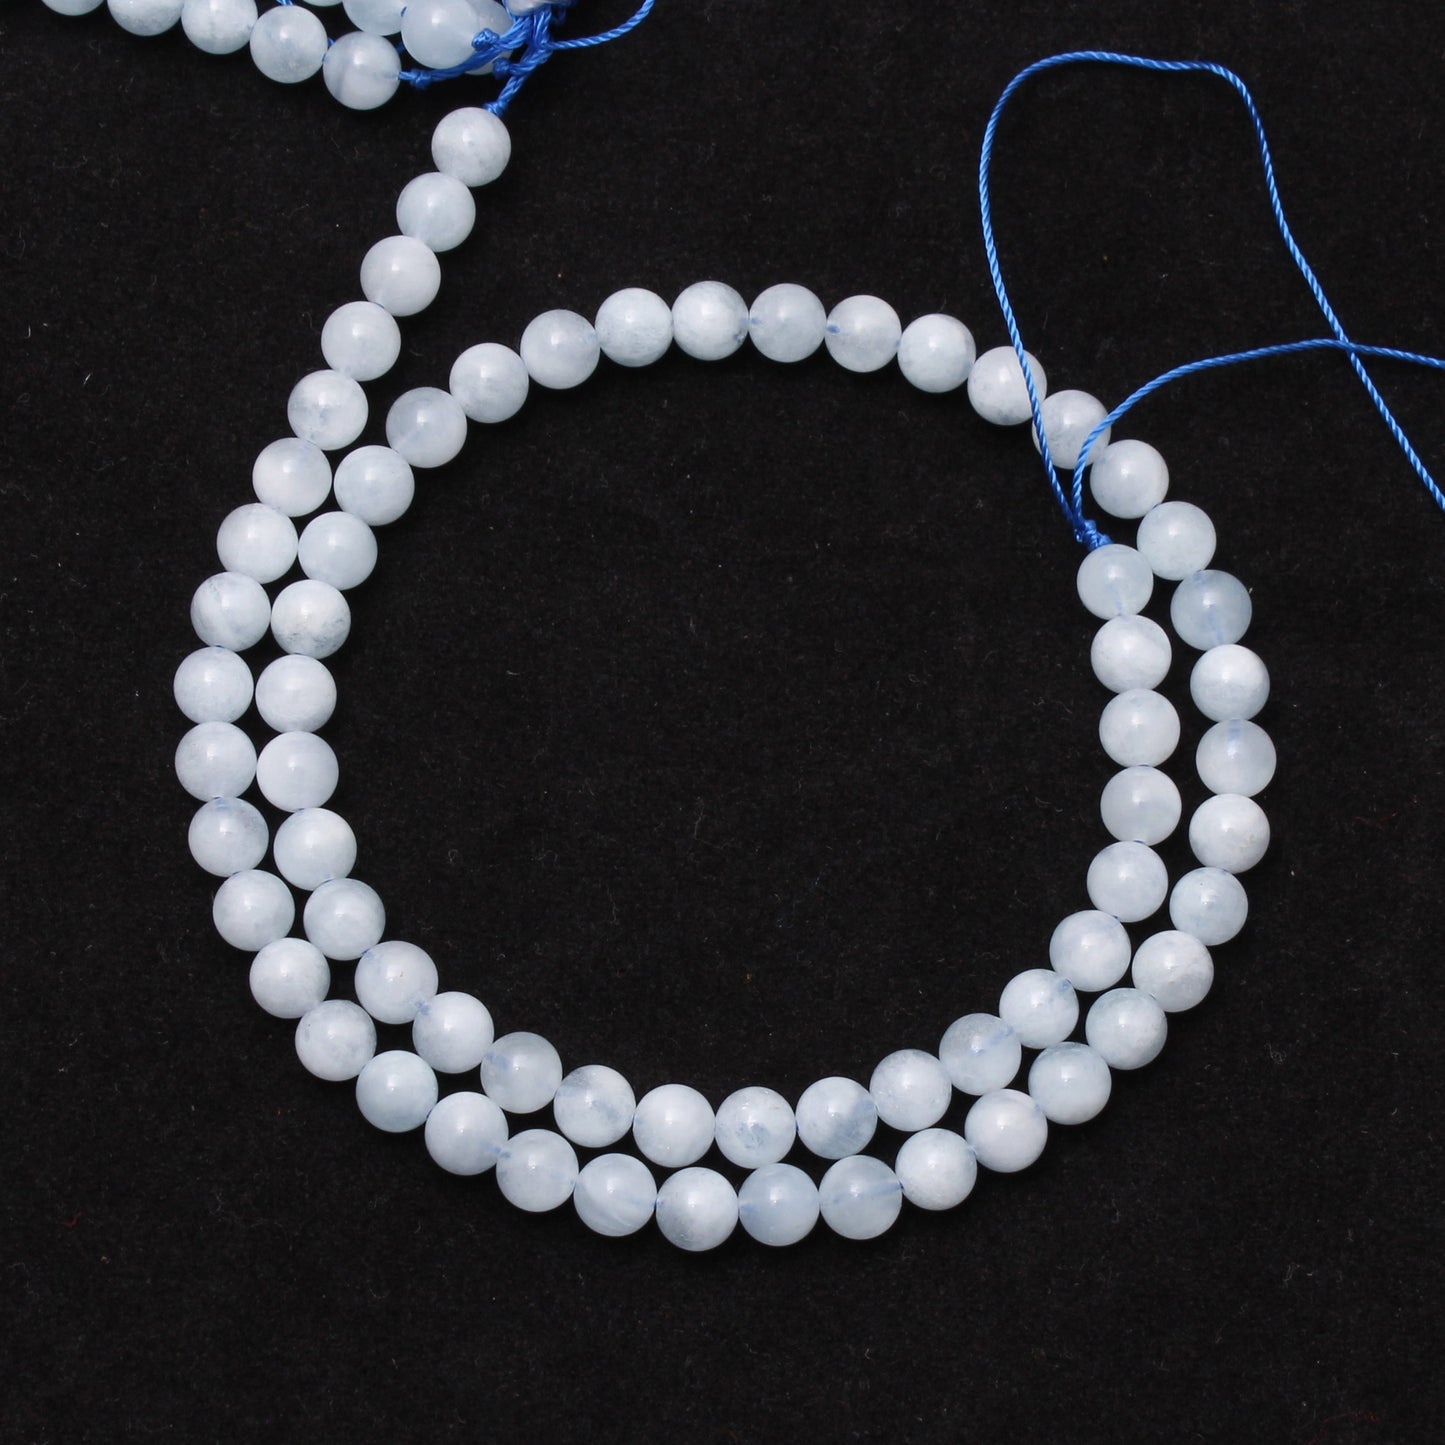 Aquamarine Round Beads, 6 mm Loose Beads Strand, 16 Inches GemsRush